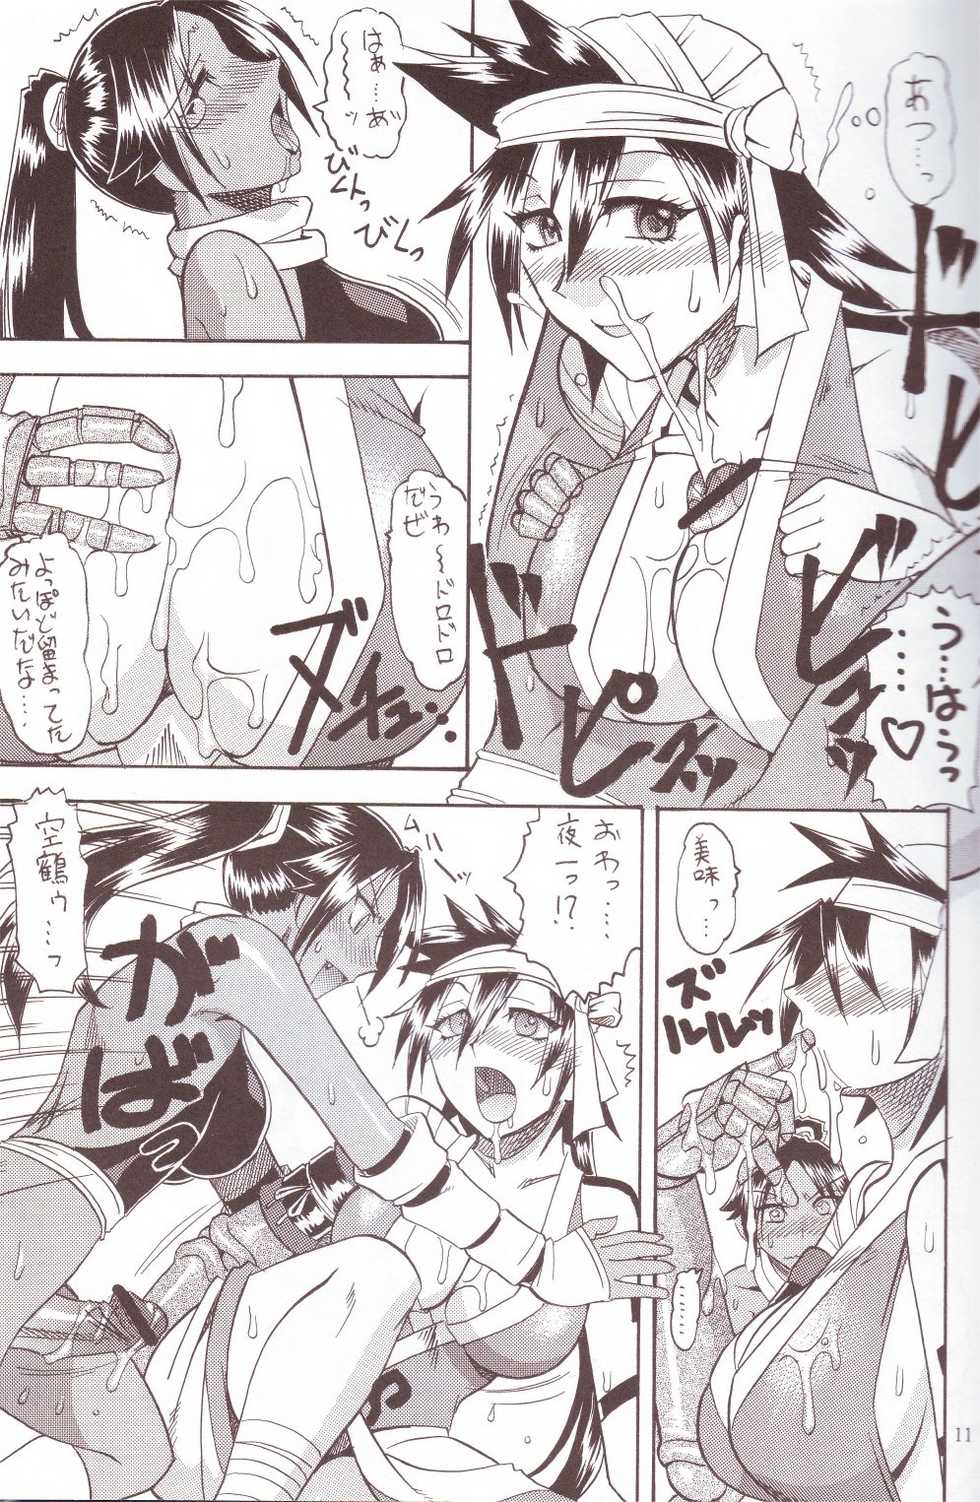 [SEMEDAIN G (Mizutani Mint, Mokkouyou Bond)] SEMEDAIN G WORKS vol.24 - Shuukan Shounen Jump Hon 4 (Bleach, One Piece) - Page 10